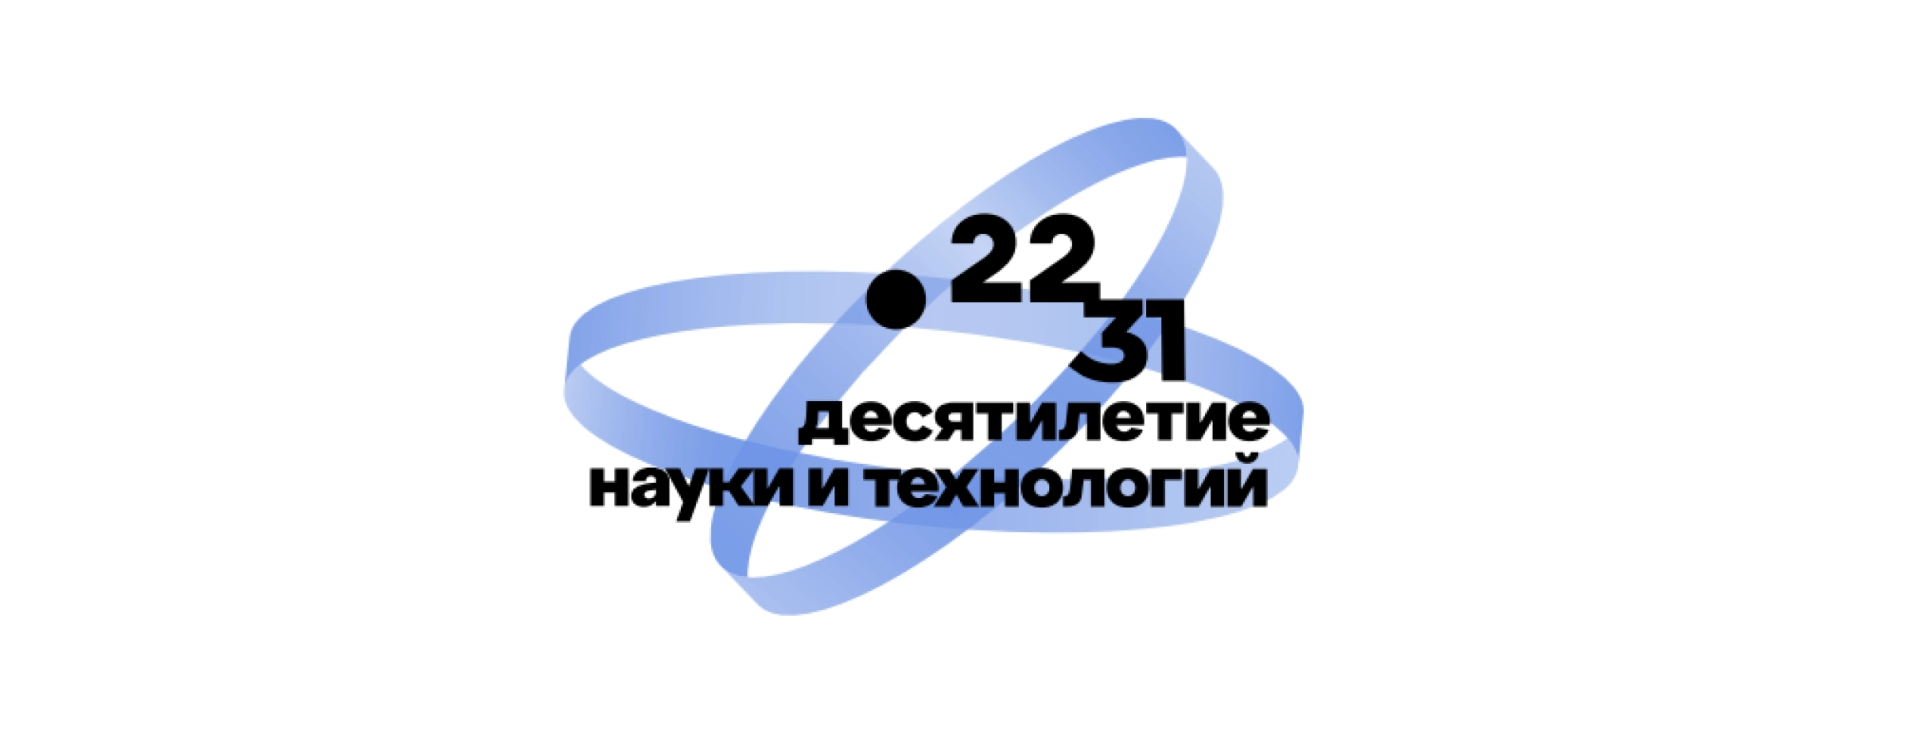 Десятилетия науки и технологий в России